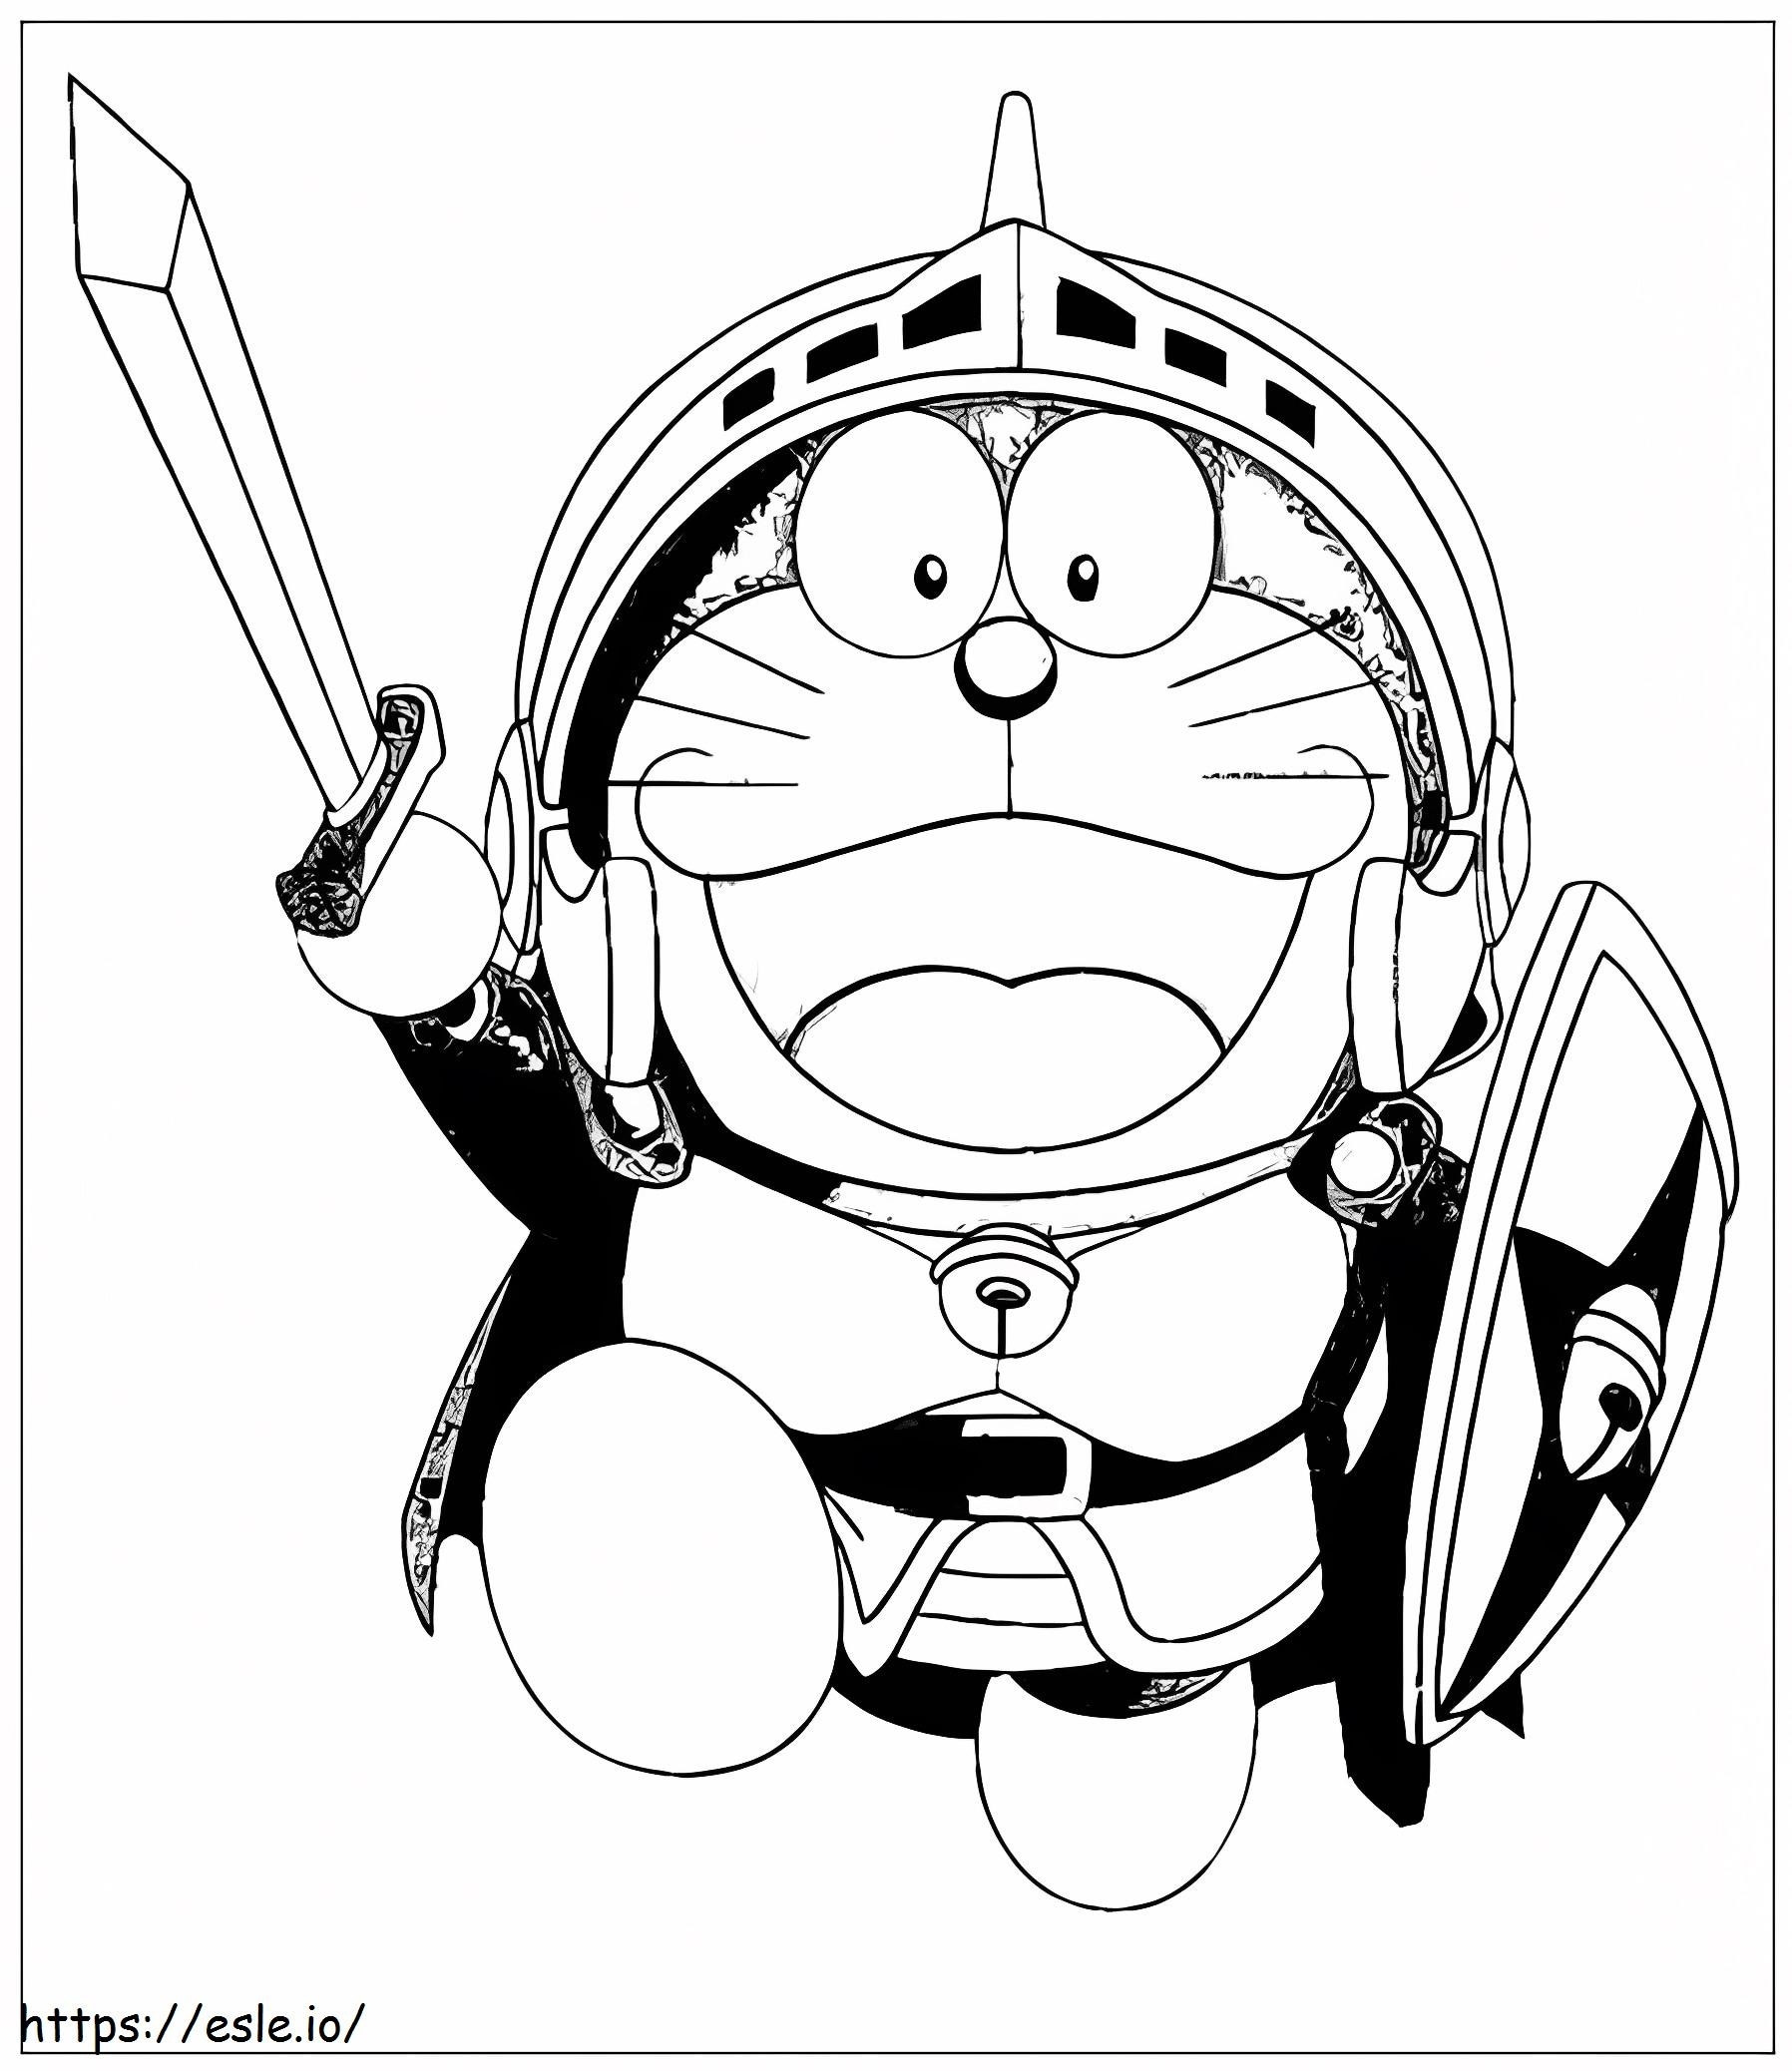 Caballero Doraemon boyama